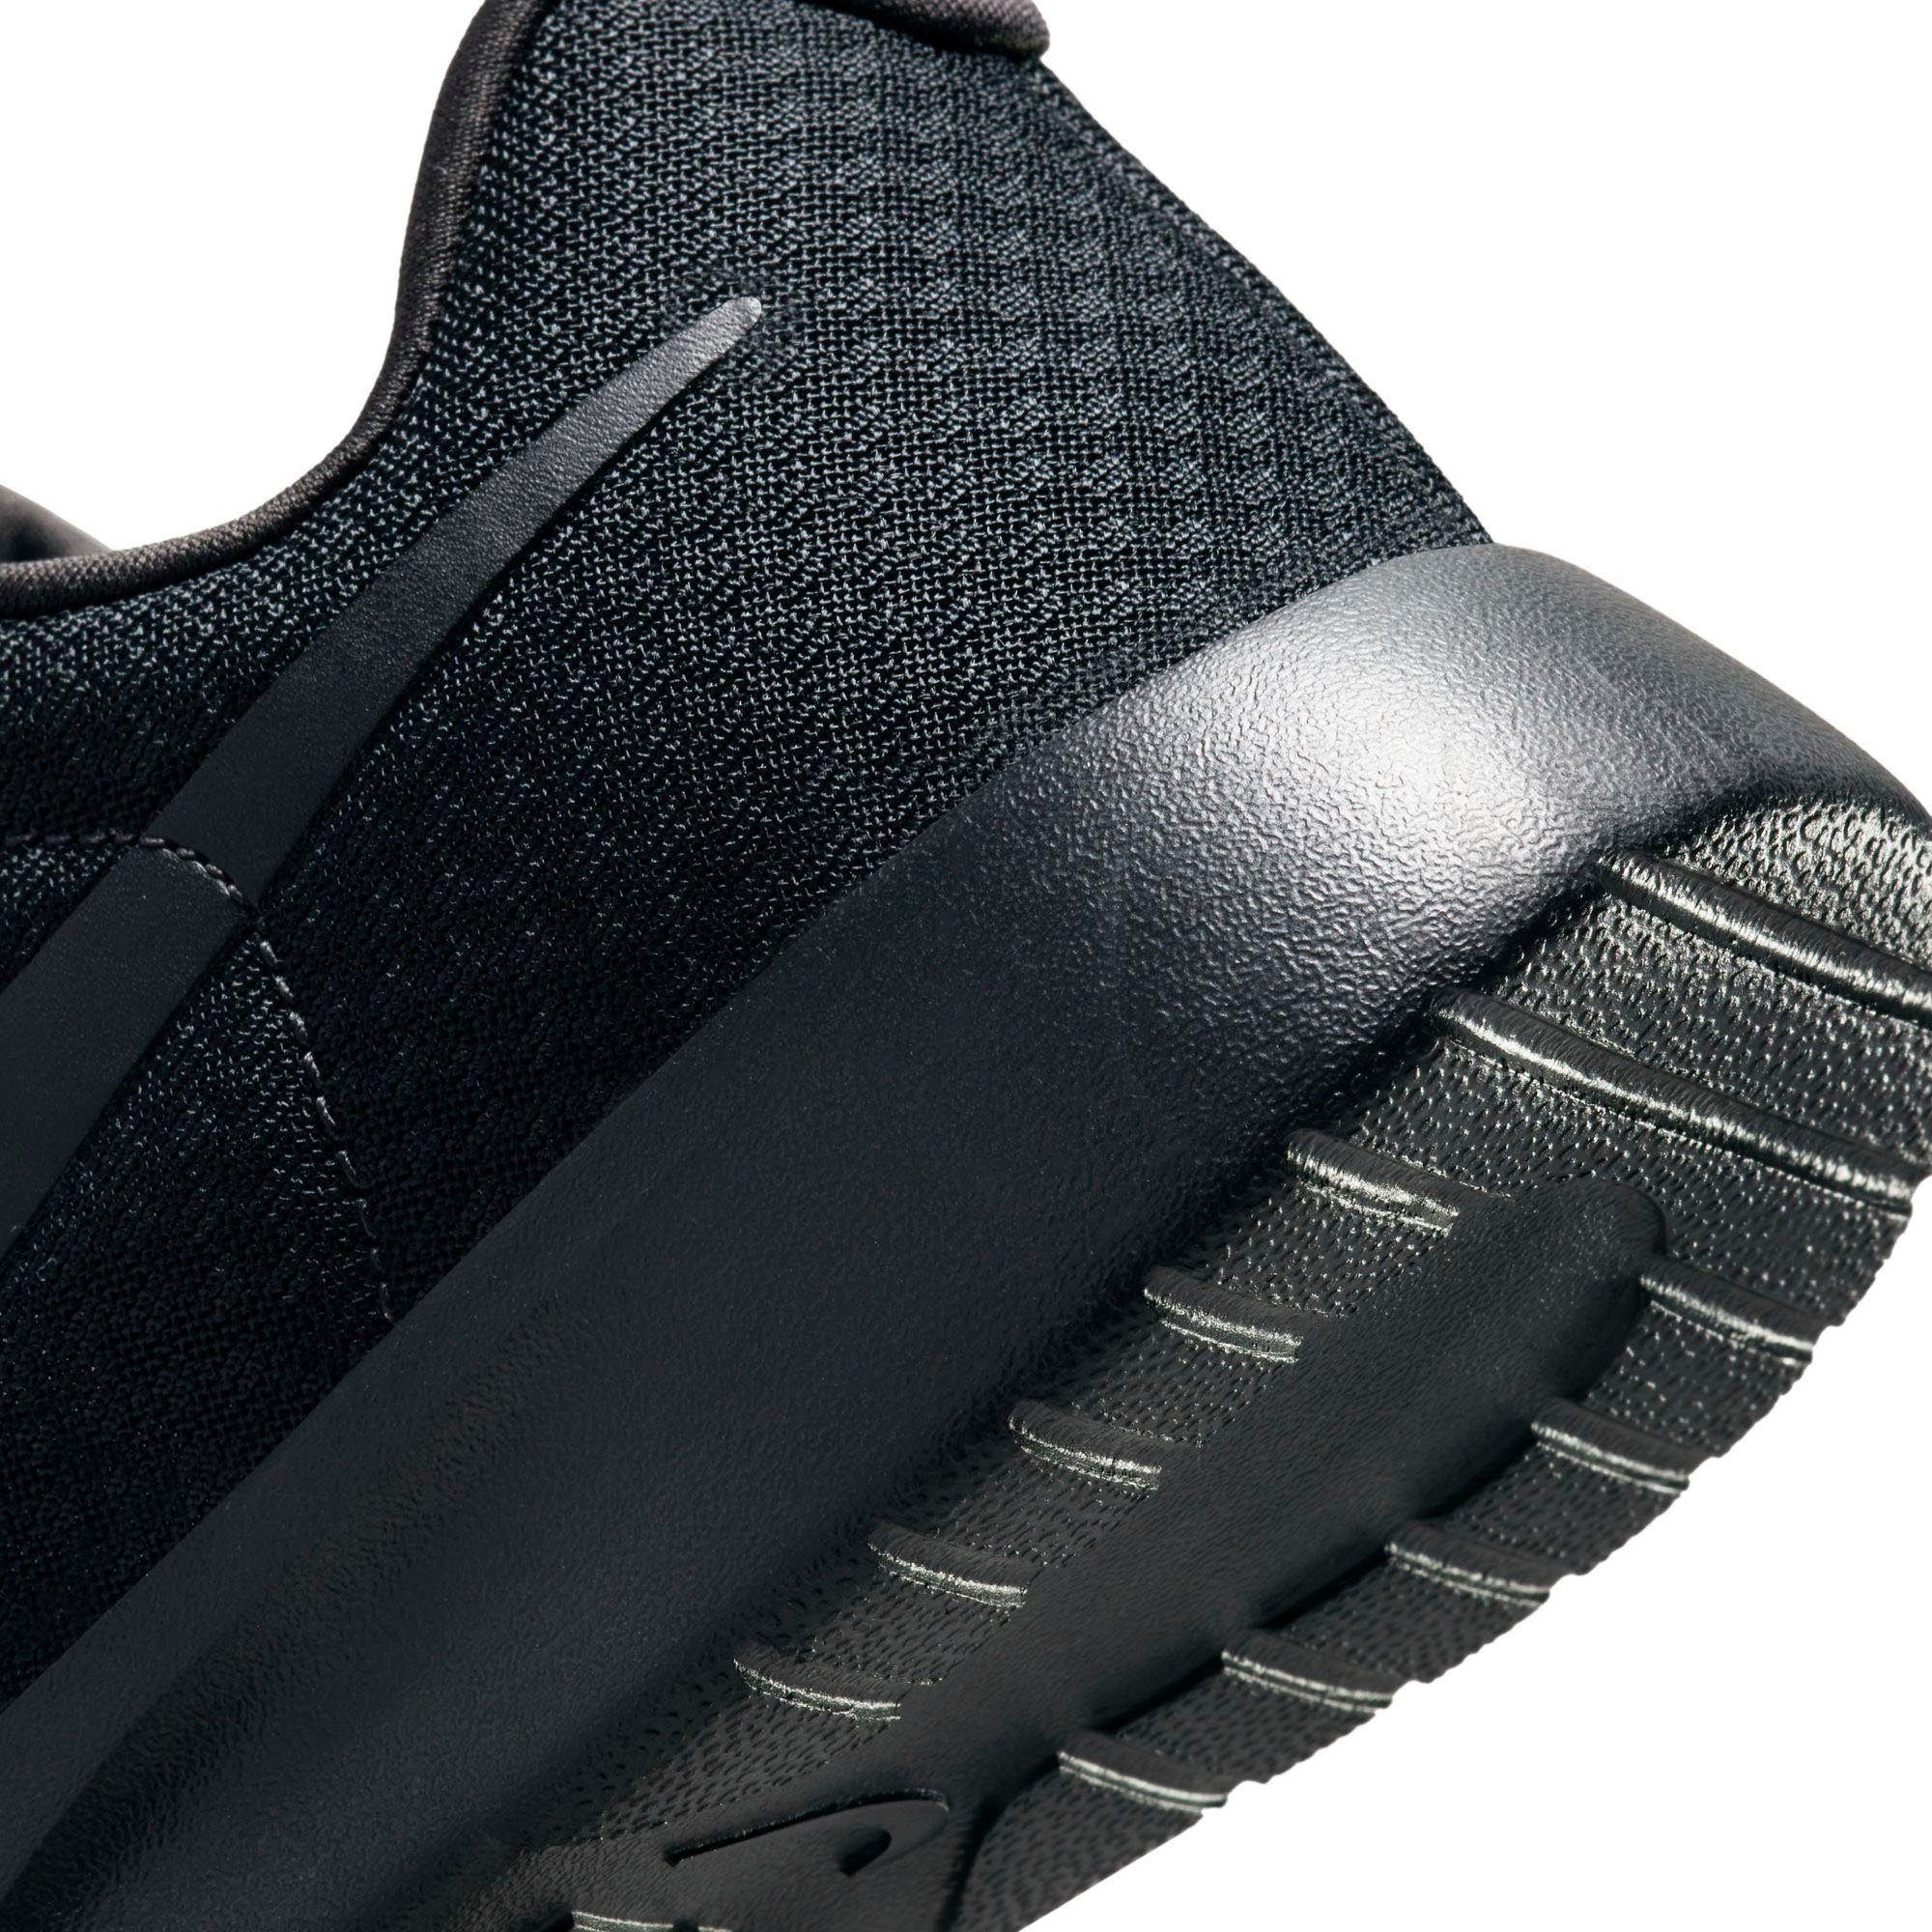 Nike Sportswear black/black Sneaker GO TANJUN (GS)